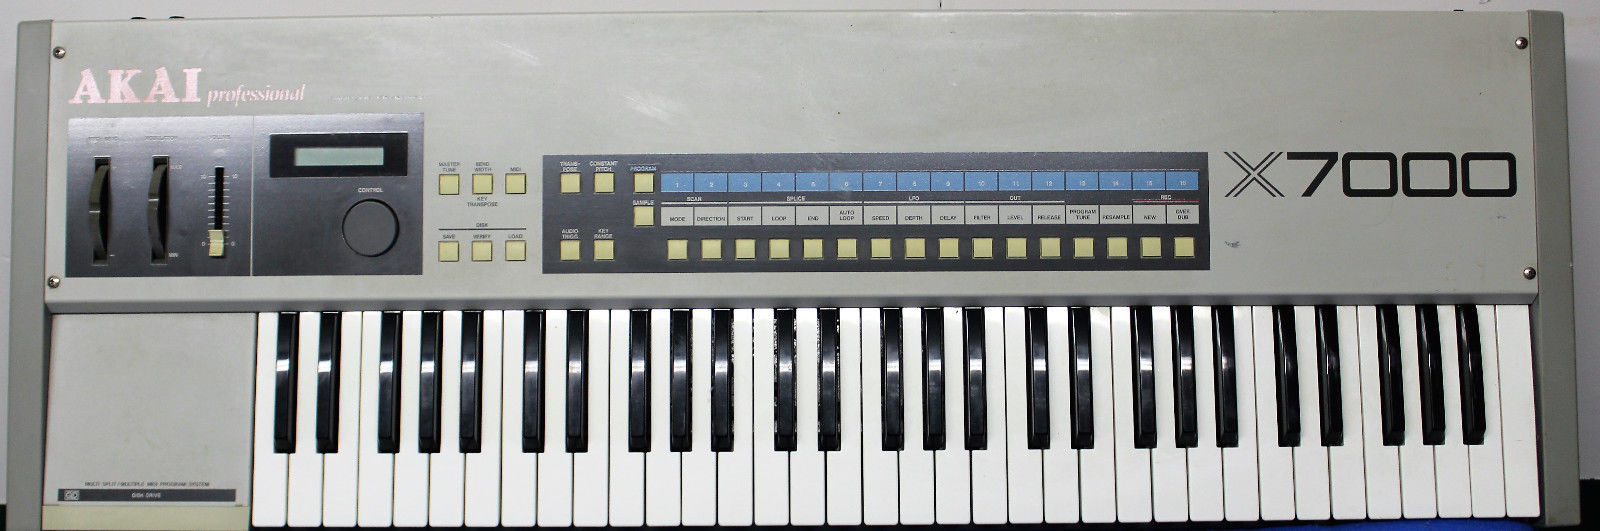 same sound as S612 S950 Akai AKAI X-7000 Vintage Analog Sampler Keyboard w/ SXM-007 